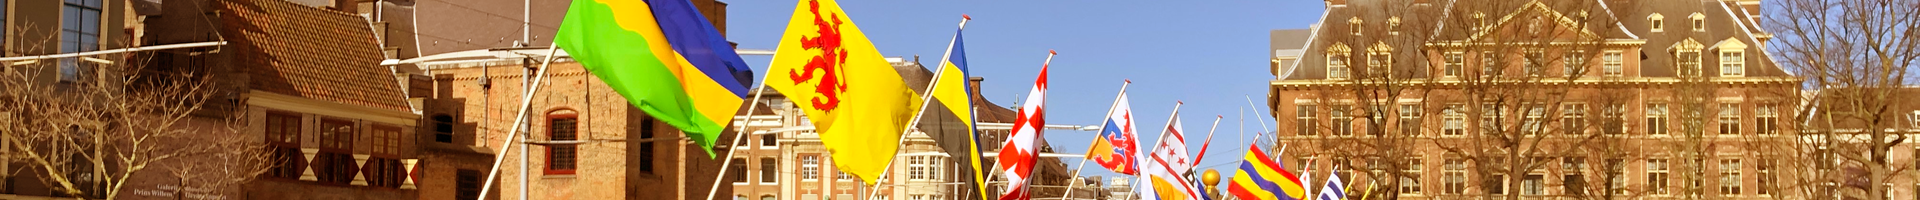 Provincievlaggen Buitenhof Warmte Filter